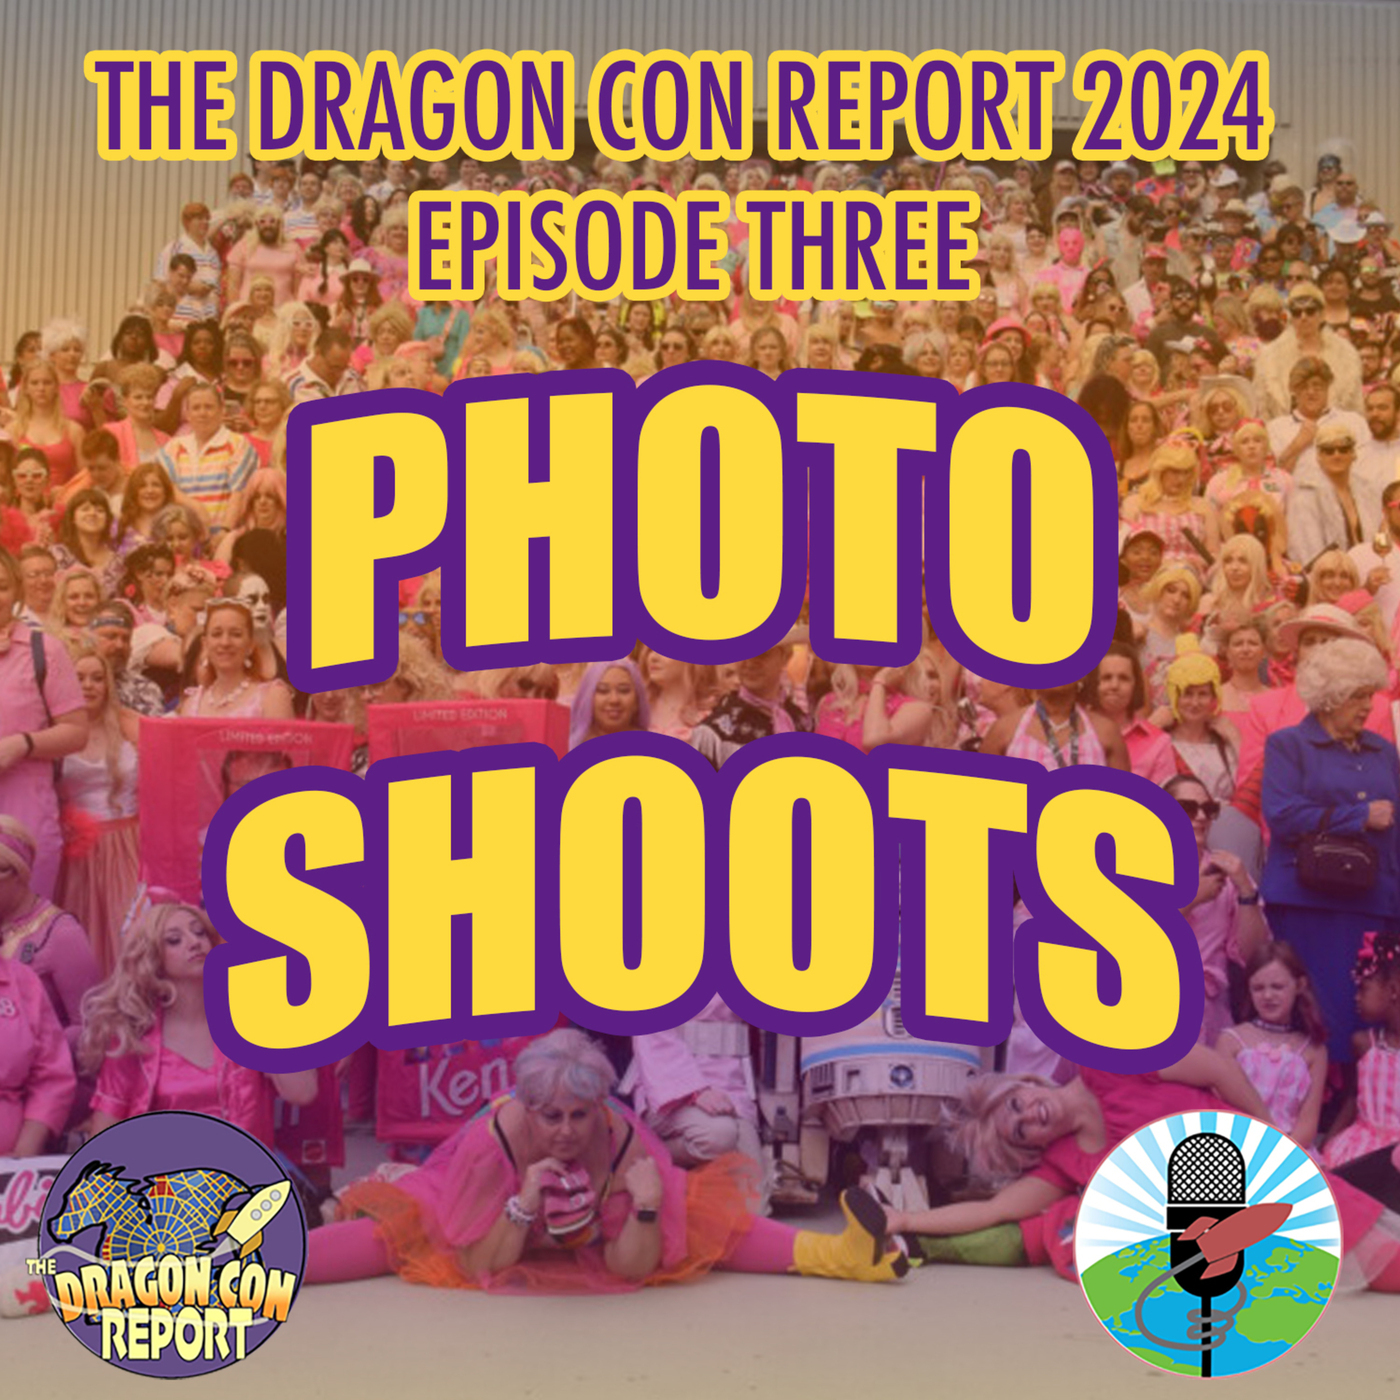 The Dragon Con Report: The 2024 Dragon Con Report Episode 3